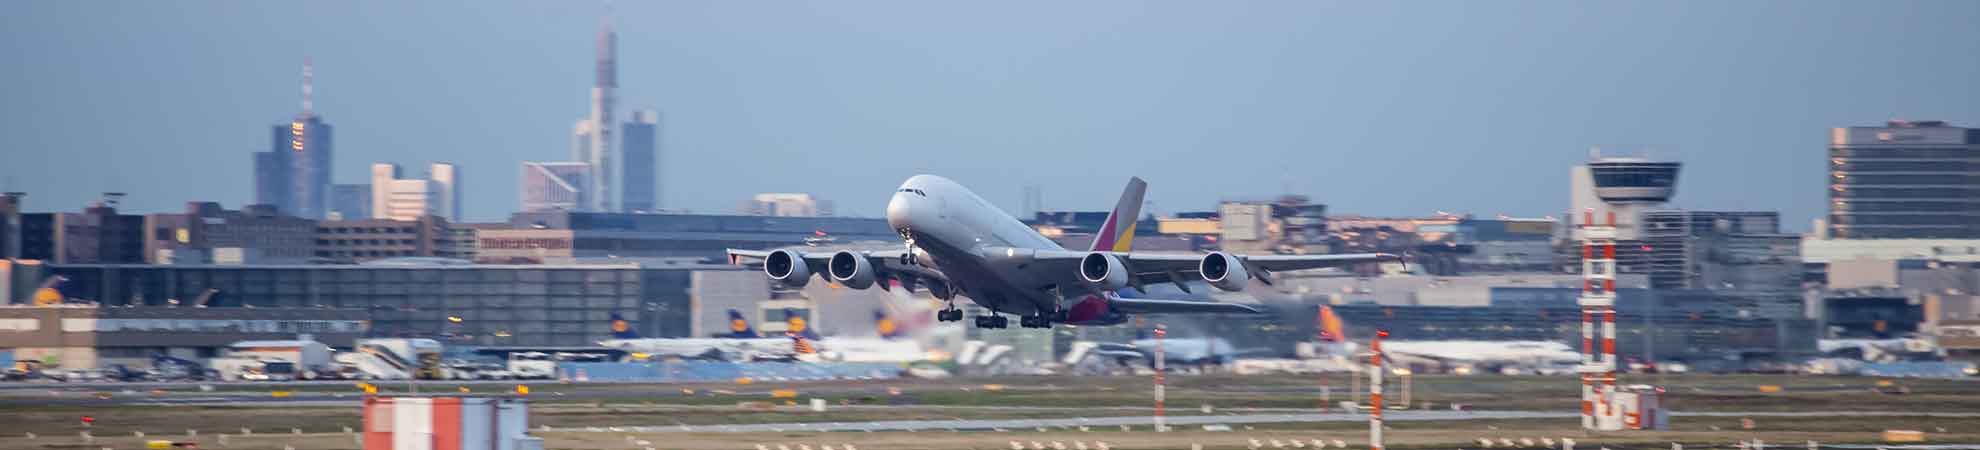 Conseils pratiques pour améliorer son expérience à l'aéroport au Sri Lanka